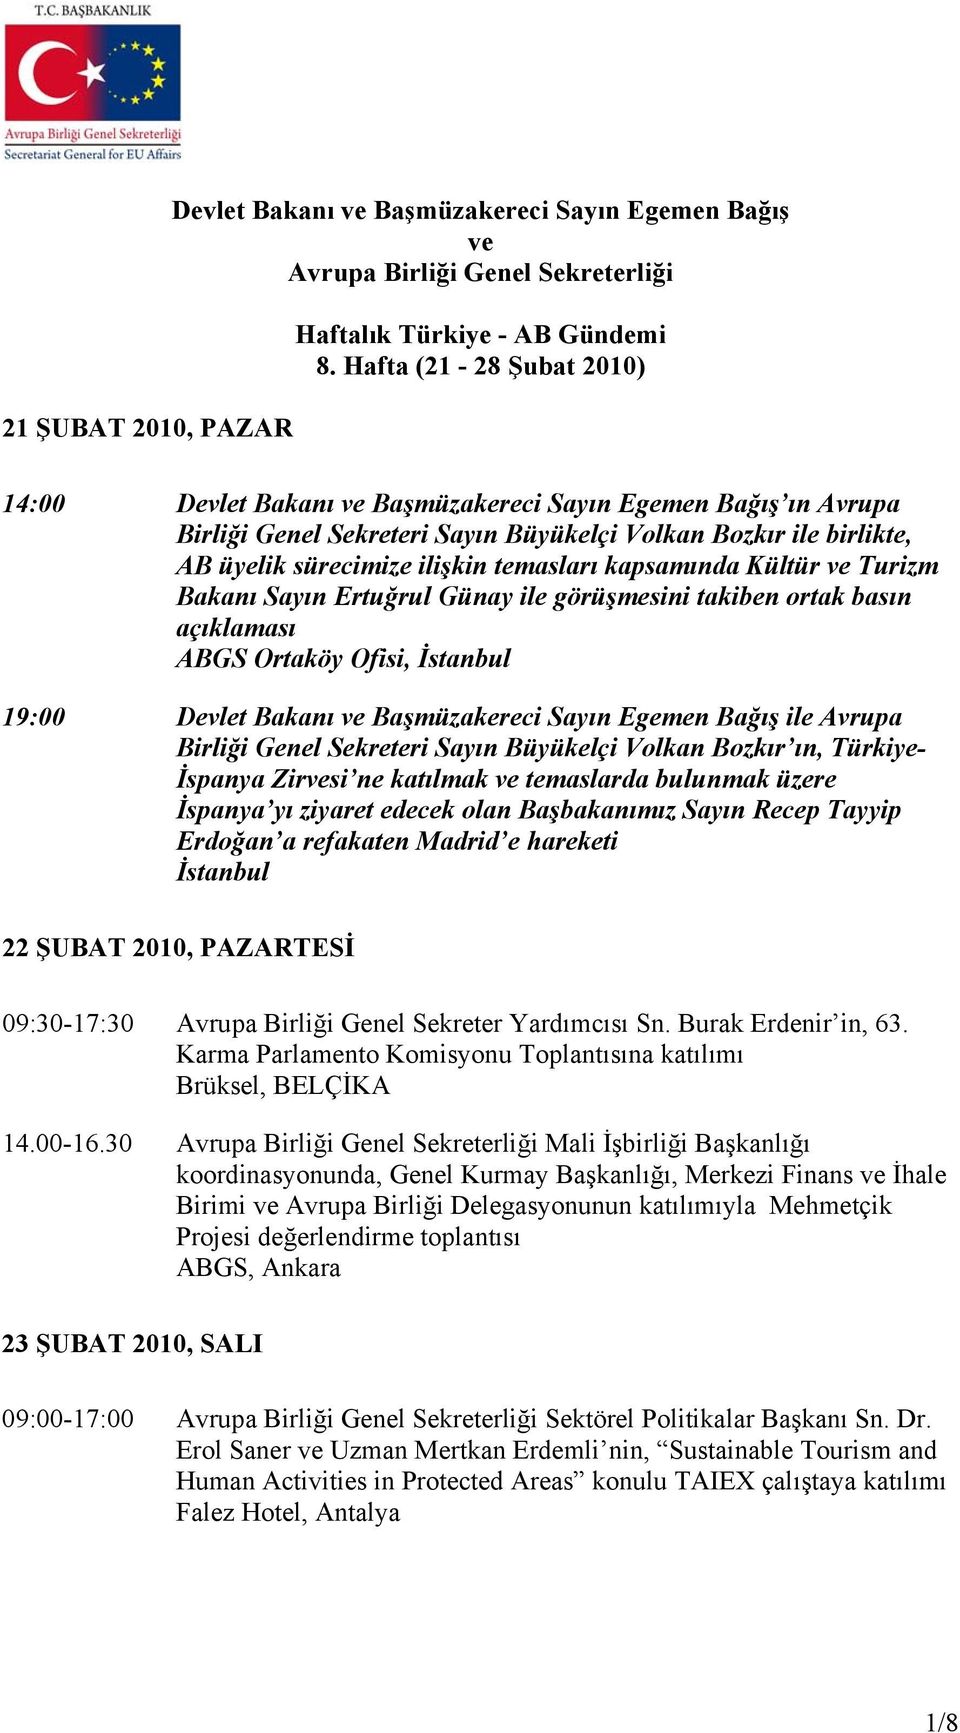 kapsamında Kültür ve Turizm Bakanı Sayın Ertuğrul Günay ile görüşmesini takiben ortak basın açıklaması ABGS Ortaköy Ofisi, İstanbul 19:00 Devlet Bakanı ve Başmüzakereci Sayın Egemen Bağış ile Avrupa